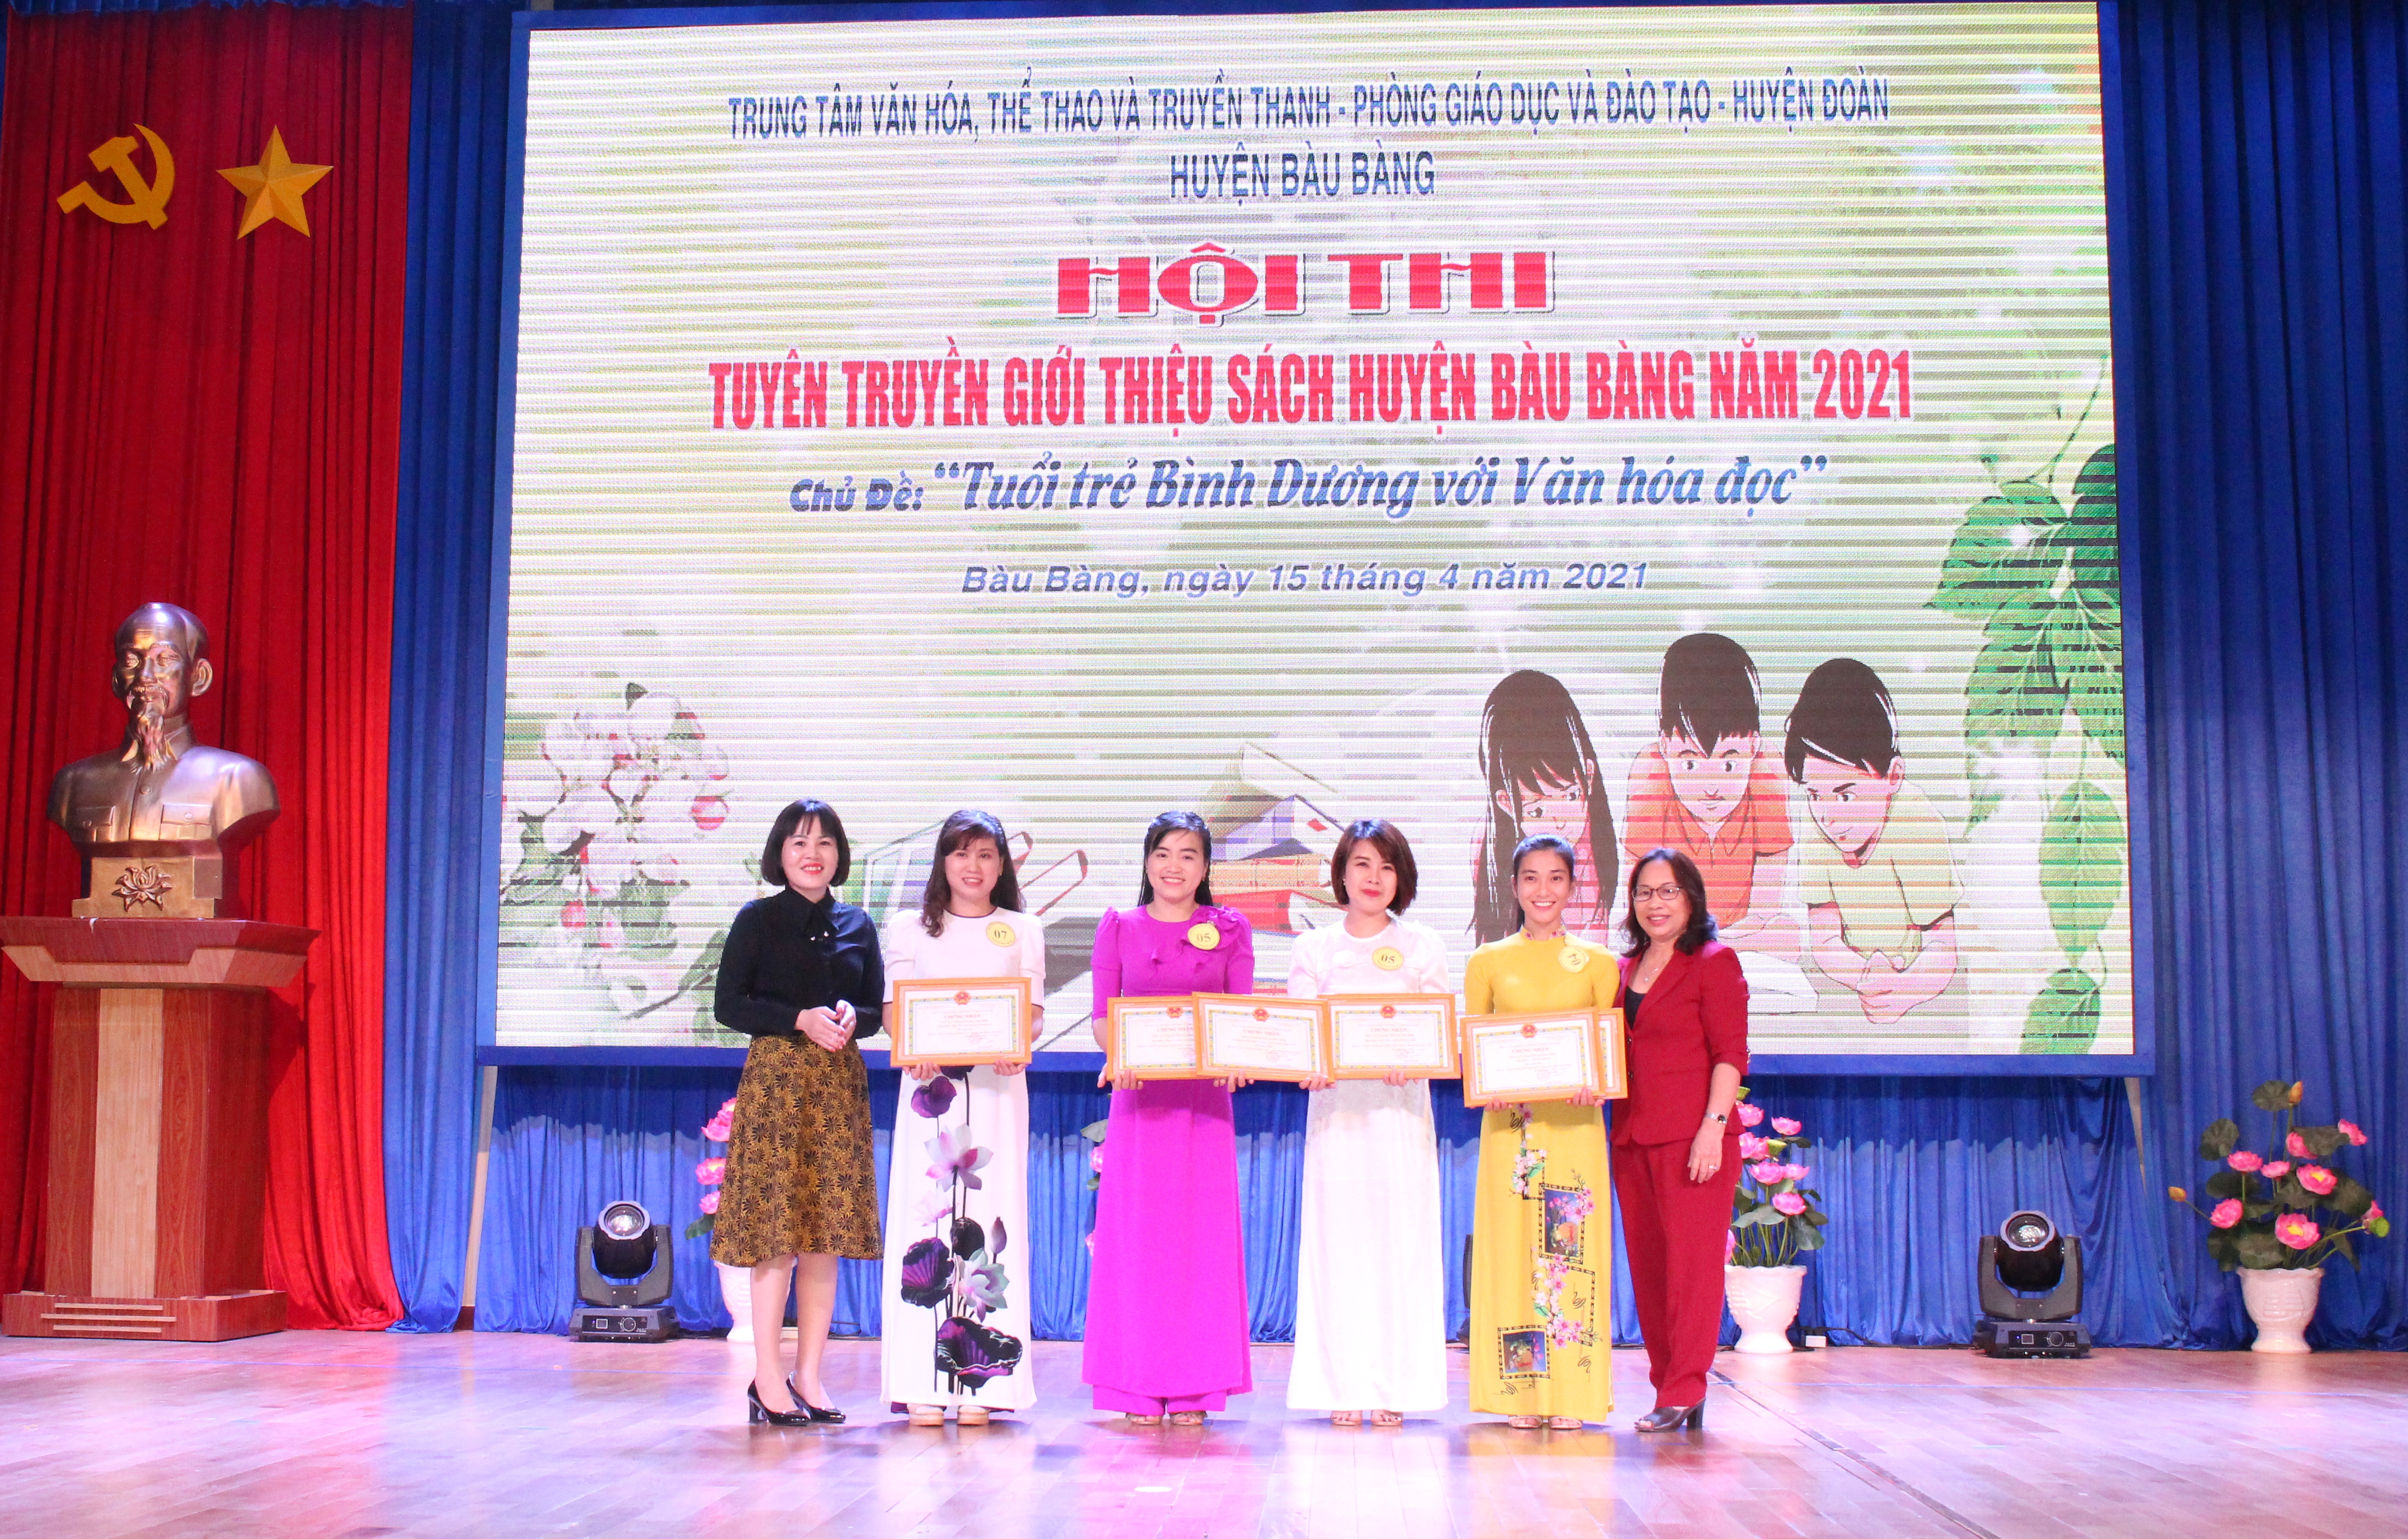 Bàu Bàng tổ chức Hội thi “Tuyên truyền giới thiệu sách” năm 2021